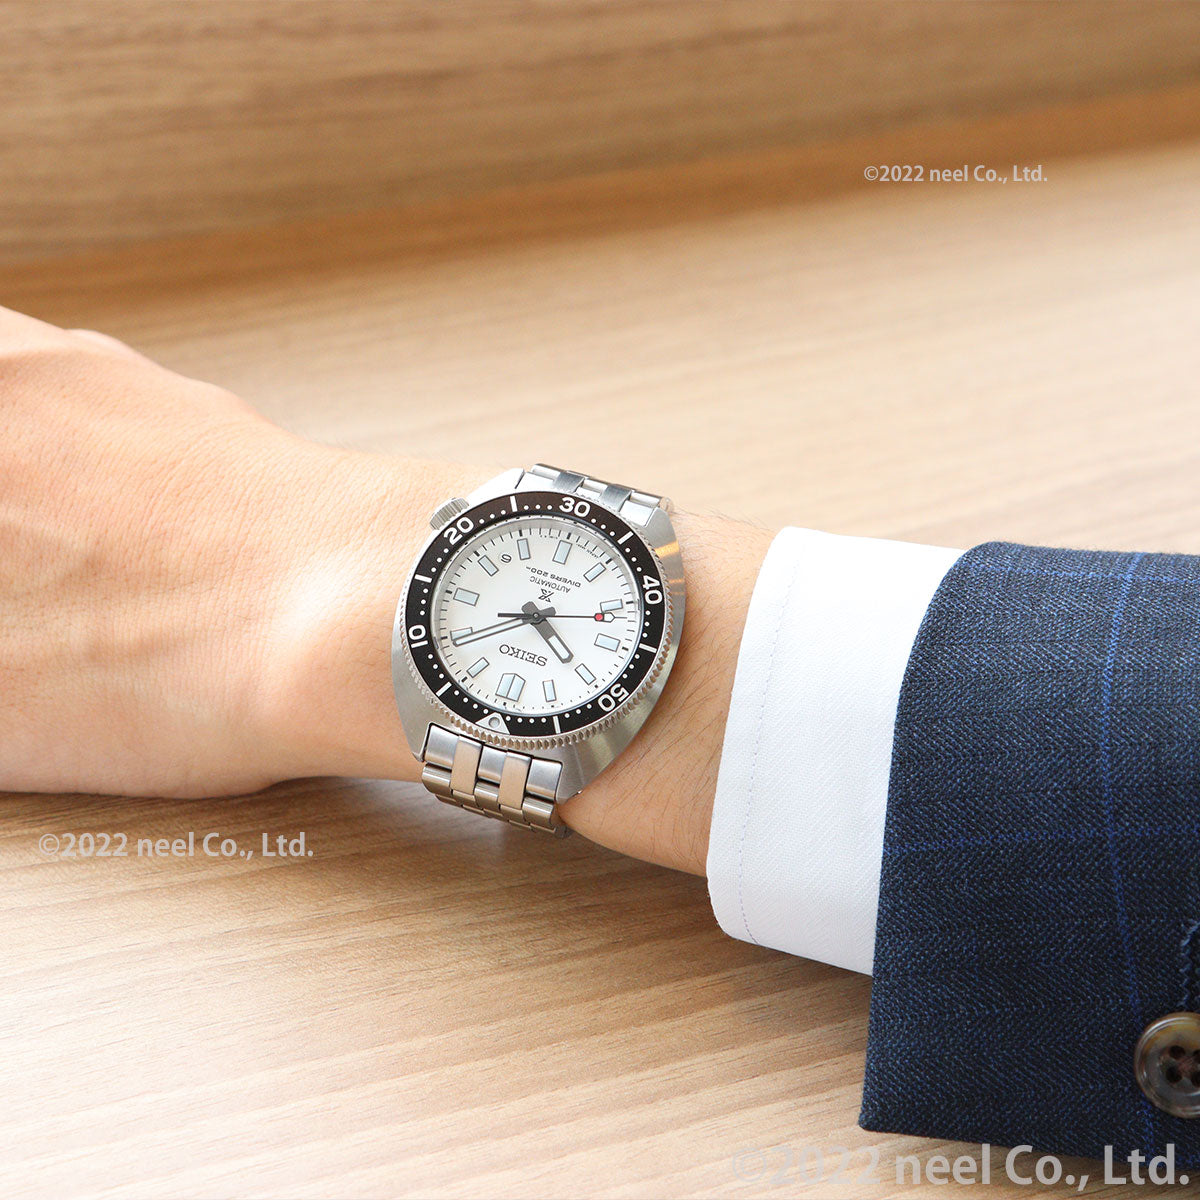 セイコー プロスペックス SEIKO PROSPEX 1stダイバーズ メカニカル 自動巻き コアショップ専用モデル 腕時計 メンズ SBDC171